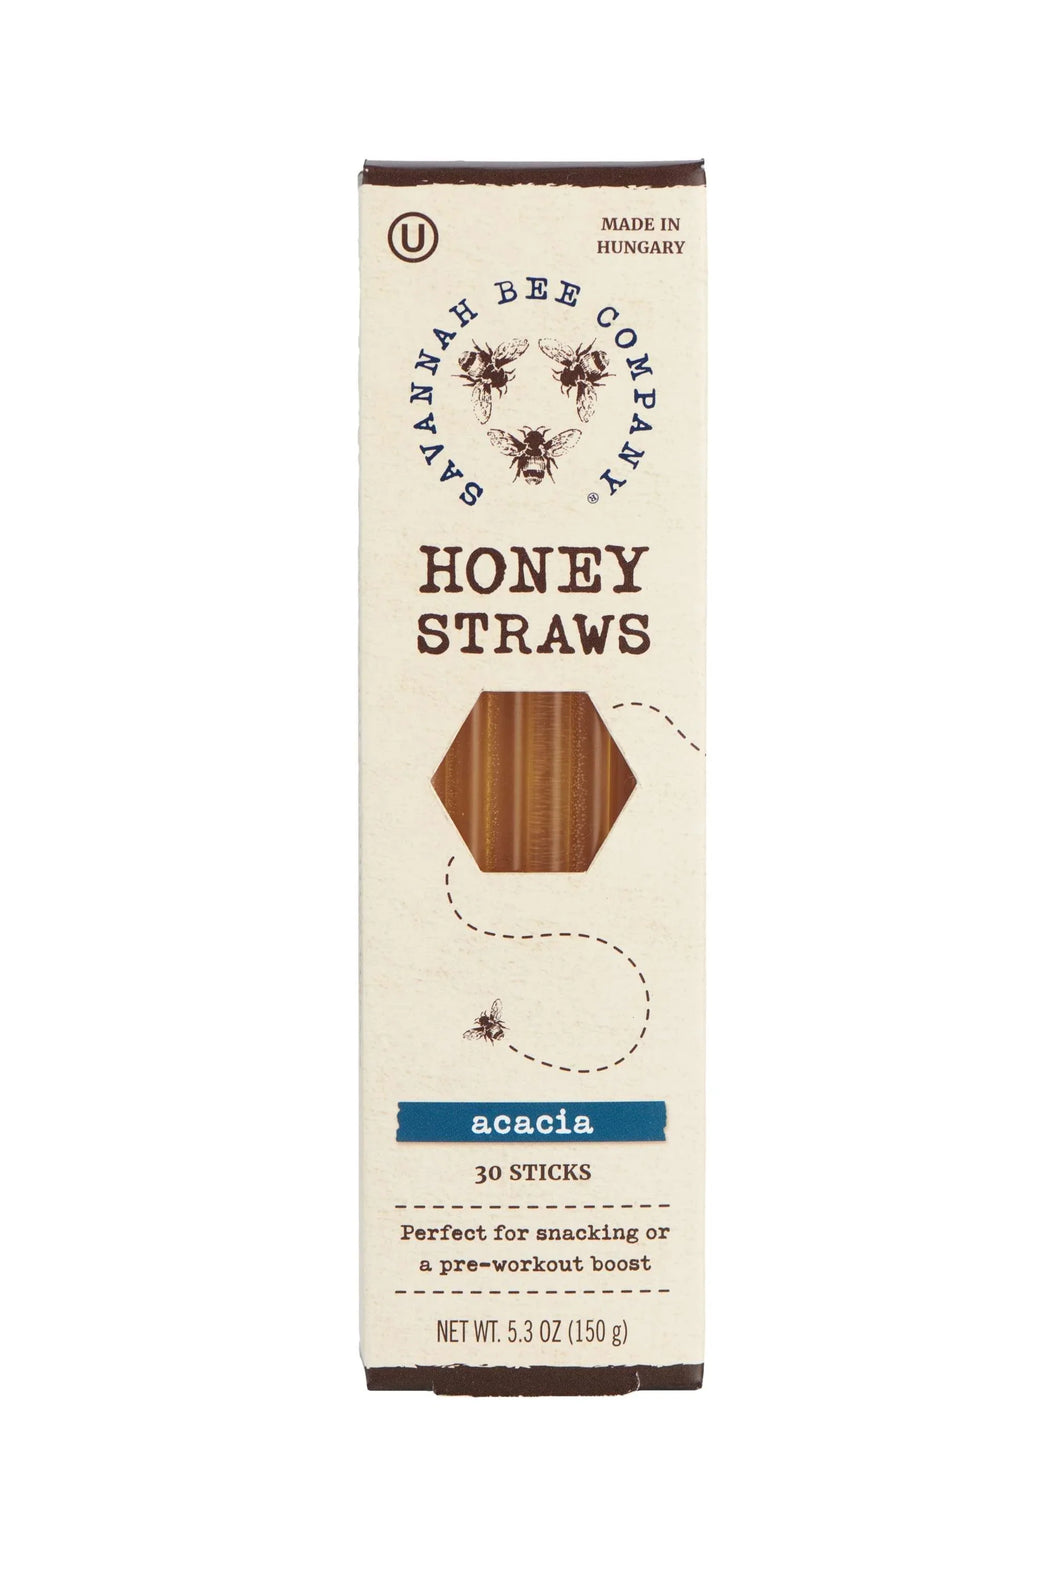 Savannah Bee Company: Honey Straws